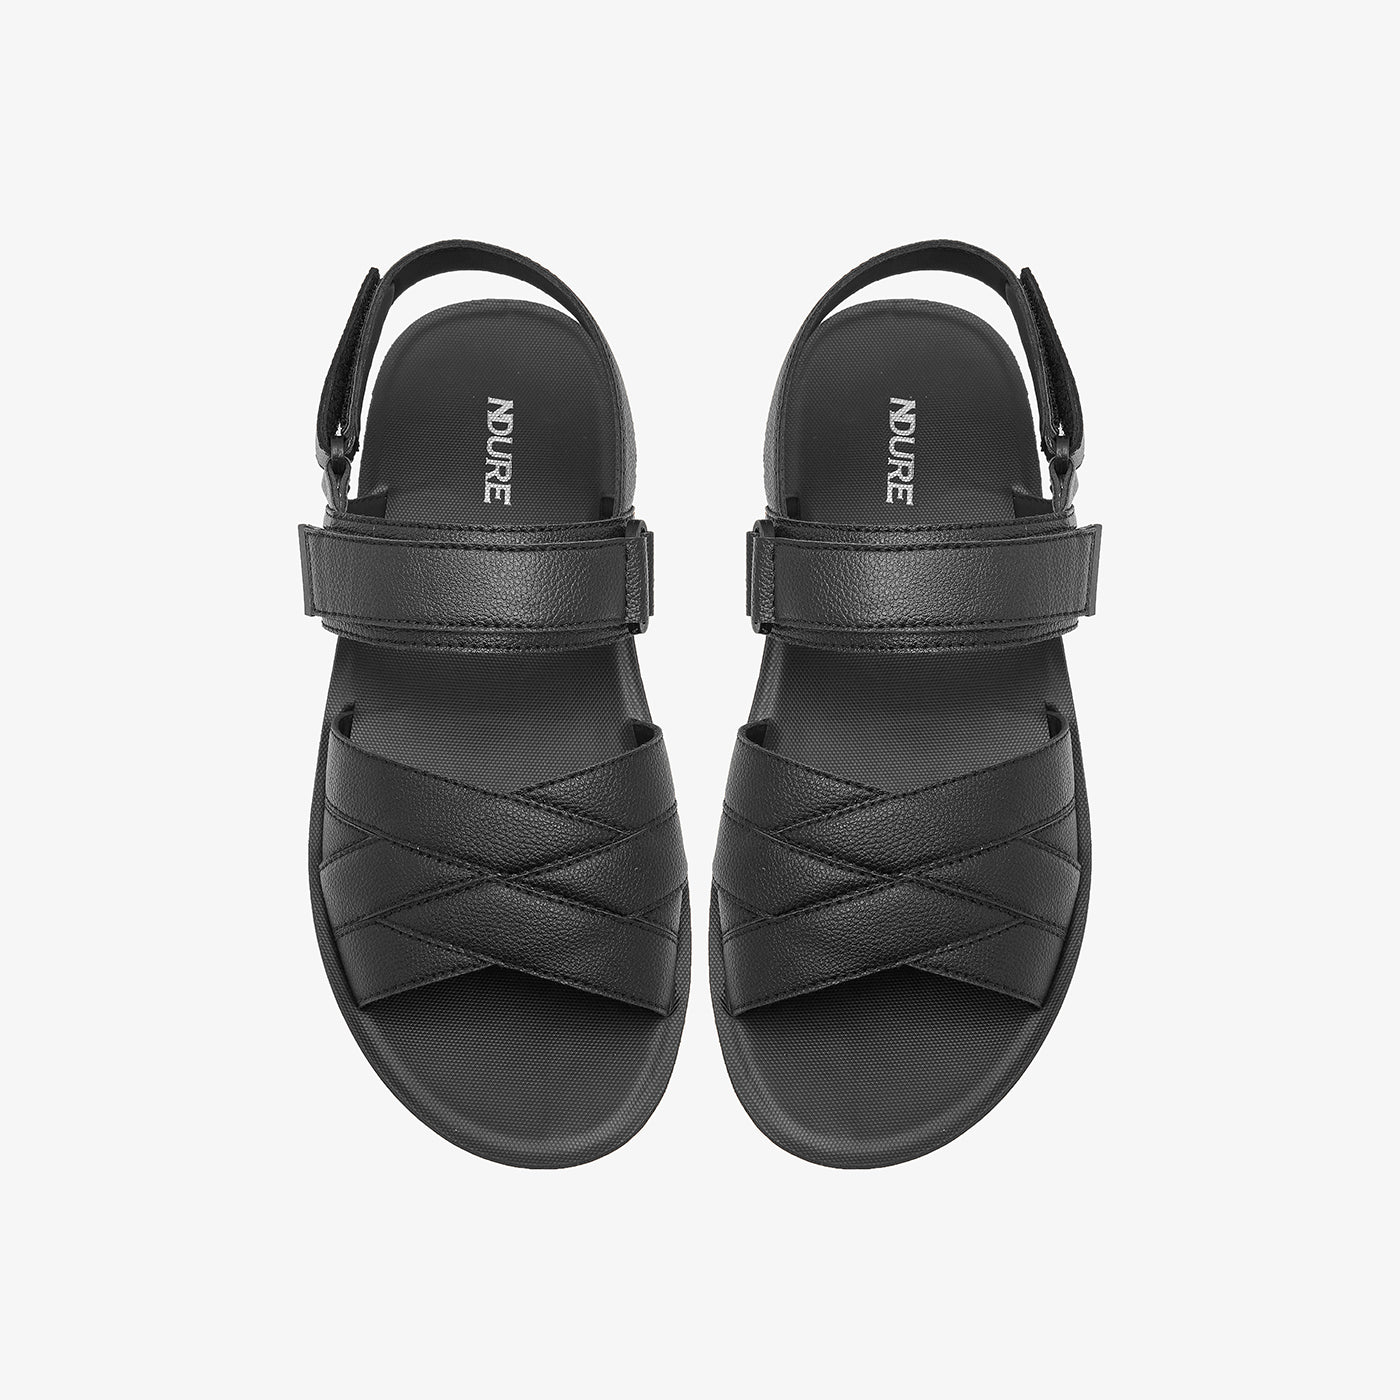 black sandals for men in Pakistan